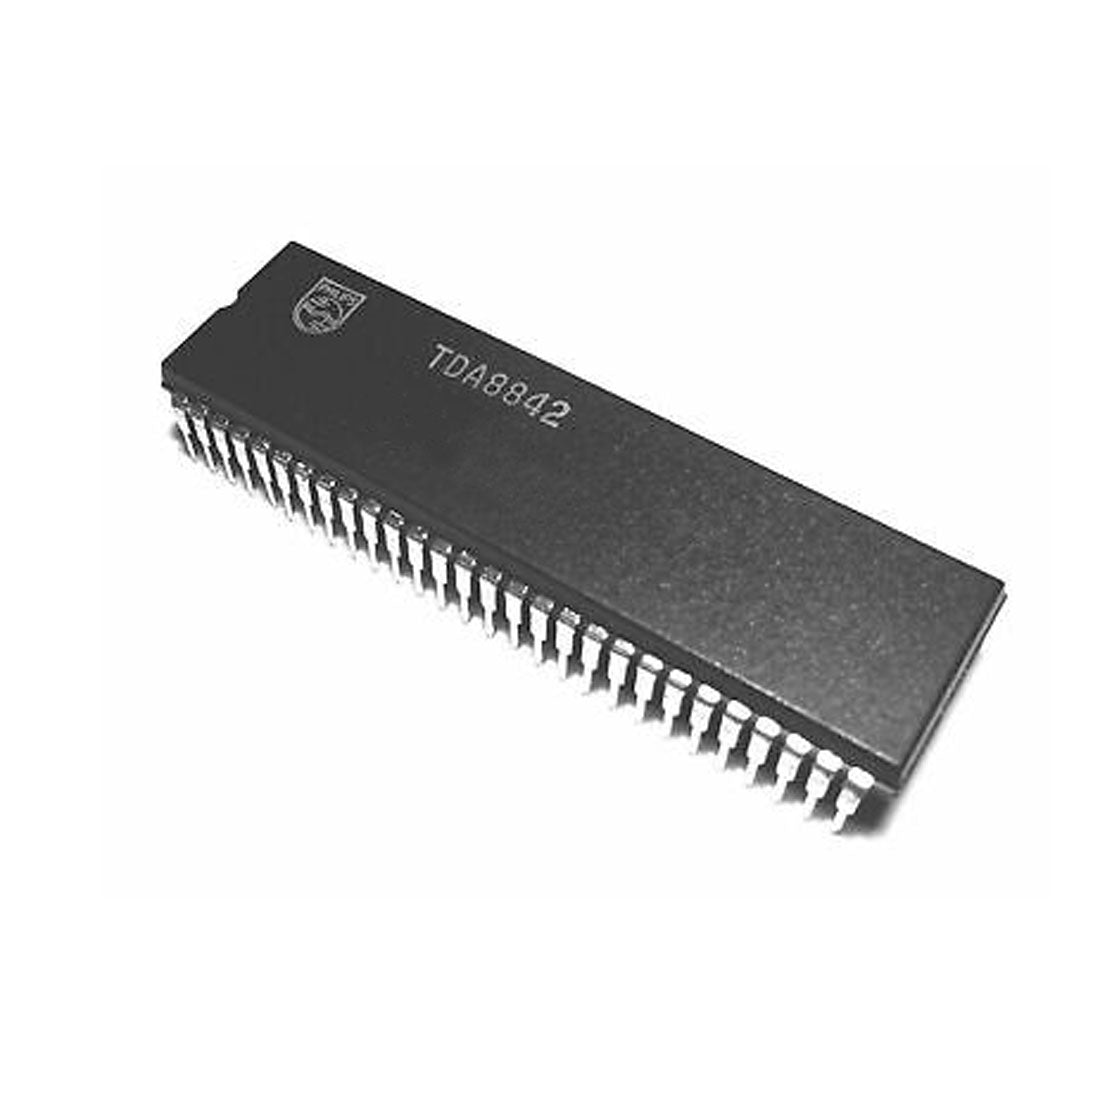 PHILIPS TDA8842 Componente elettronico, circuito integrato, 56 contatti